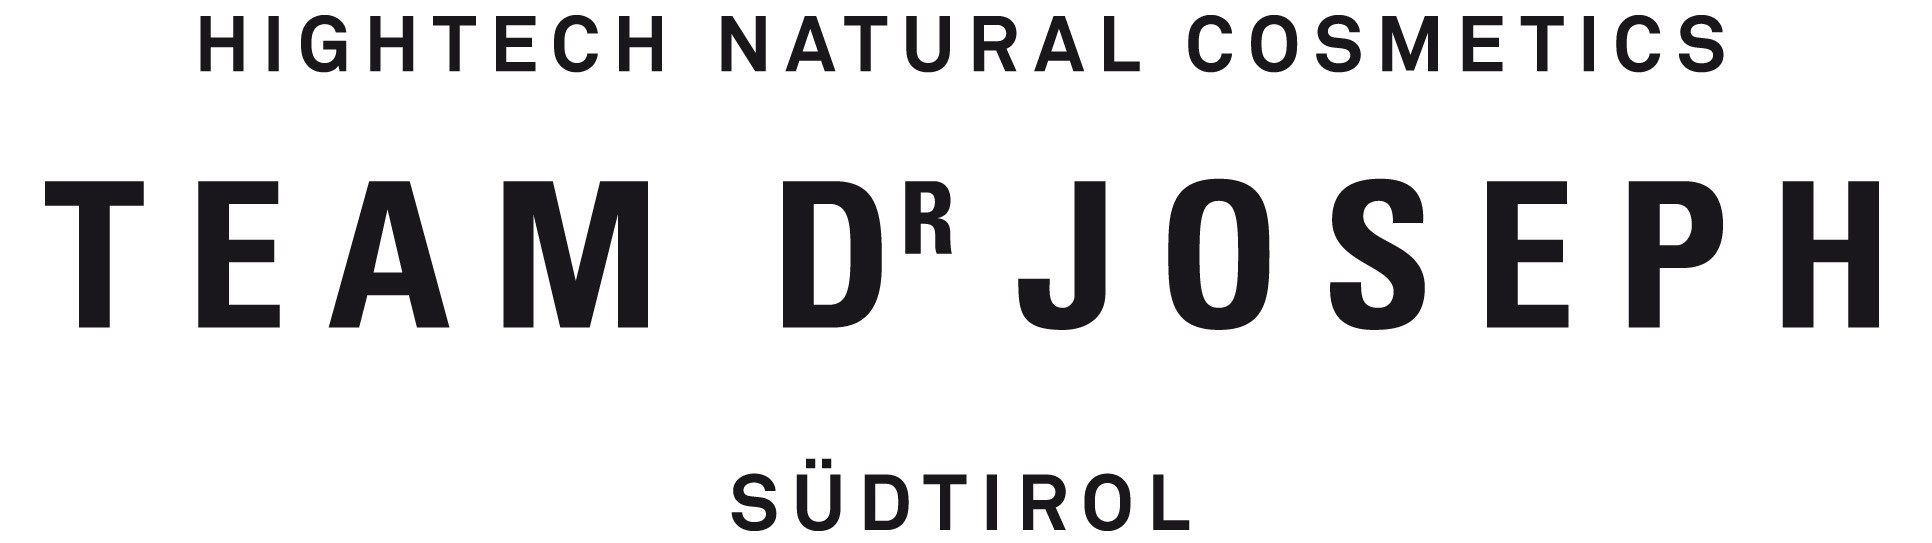 TEAM DR JOSEPH – Hightech Natural Cosmetics